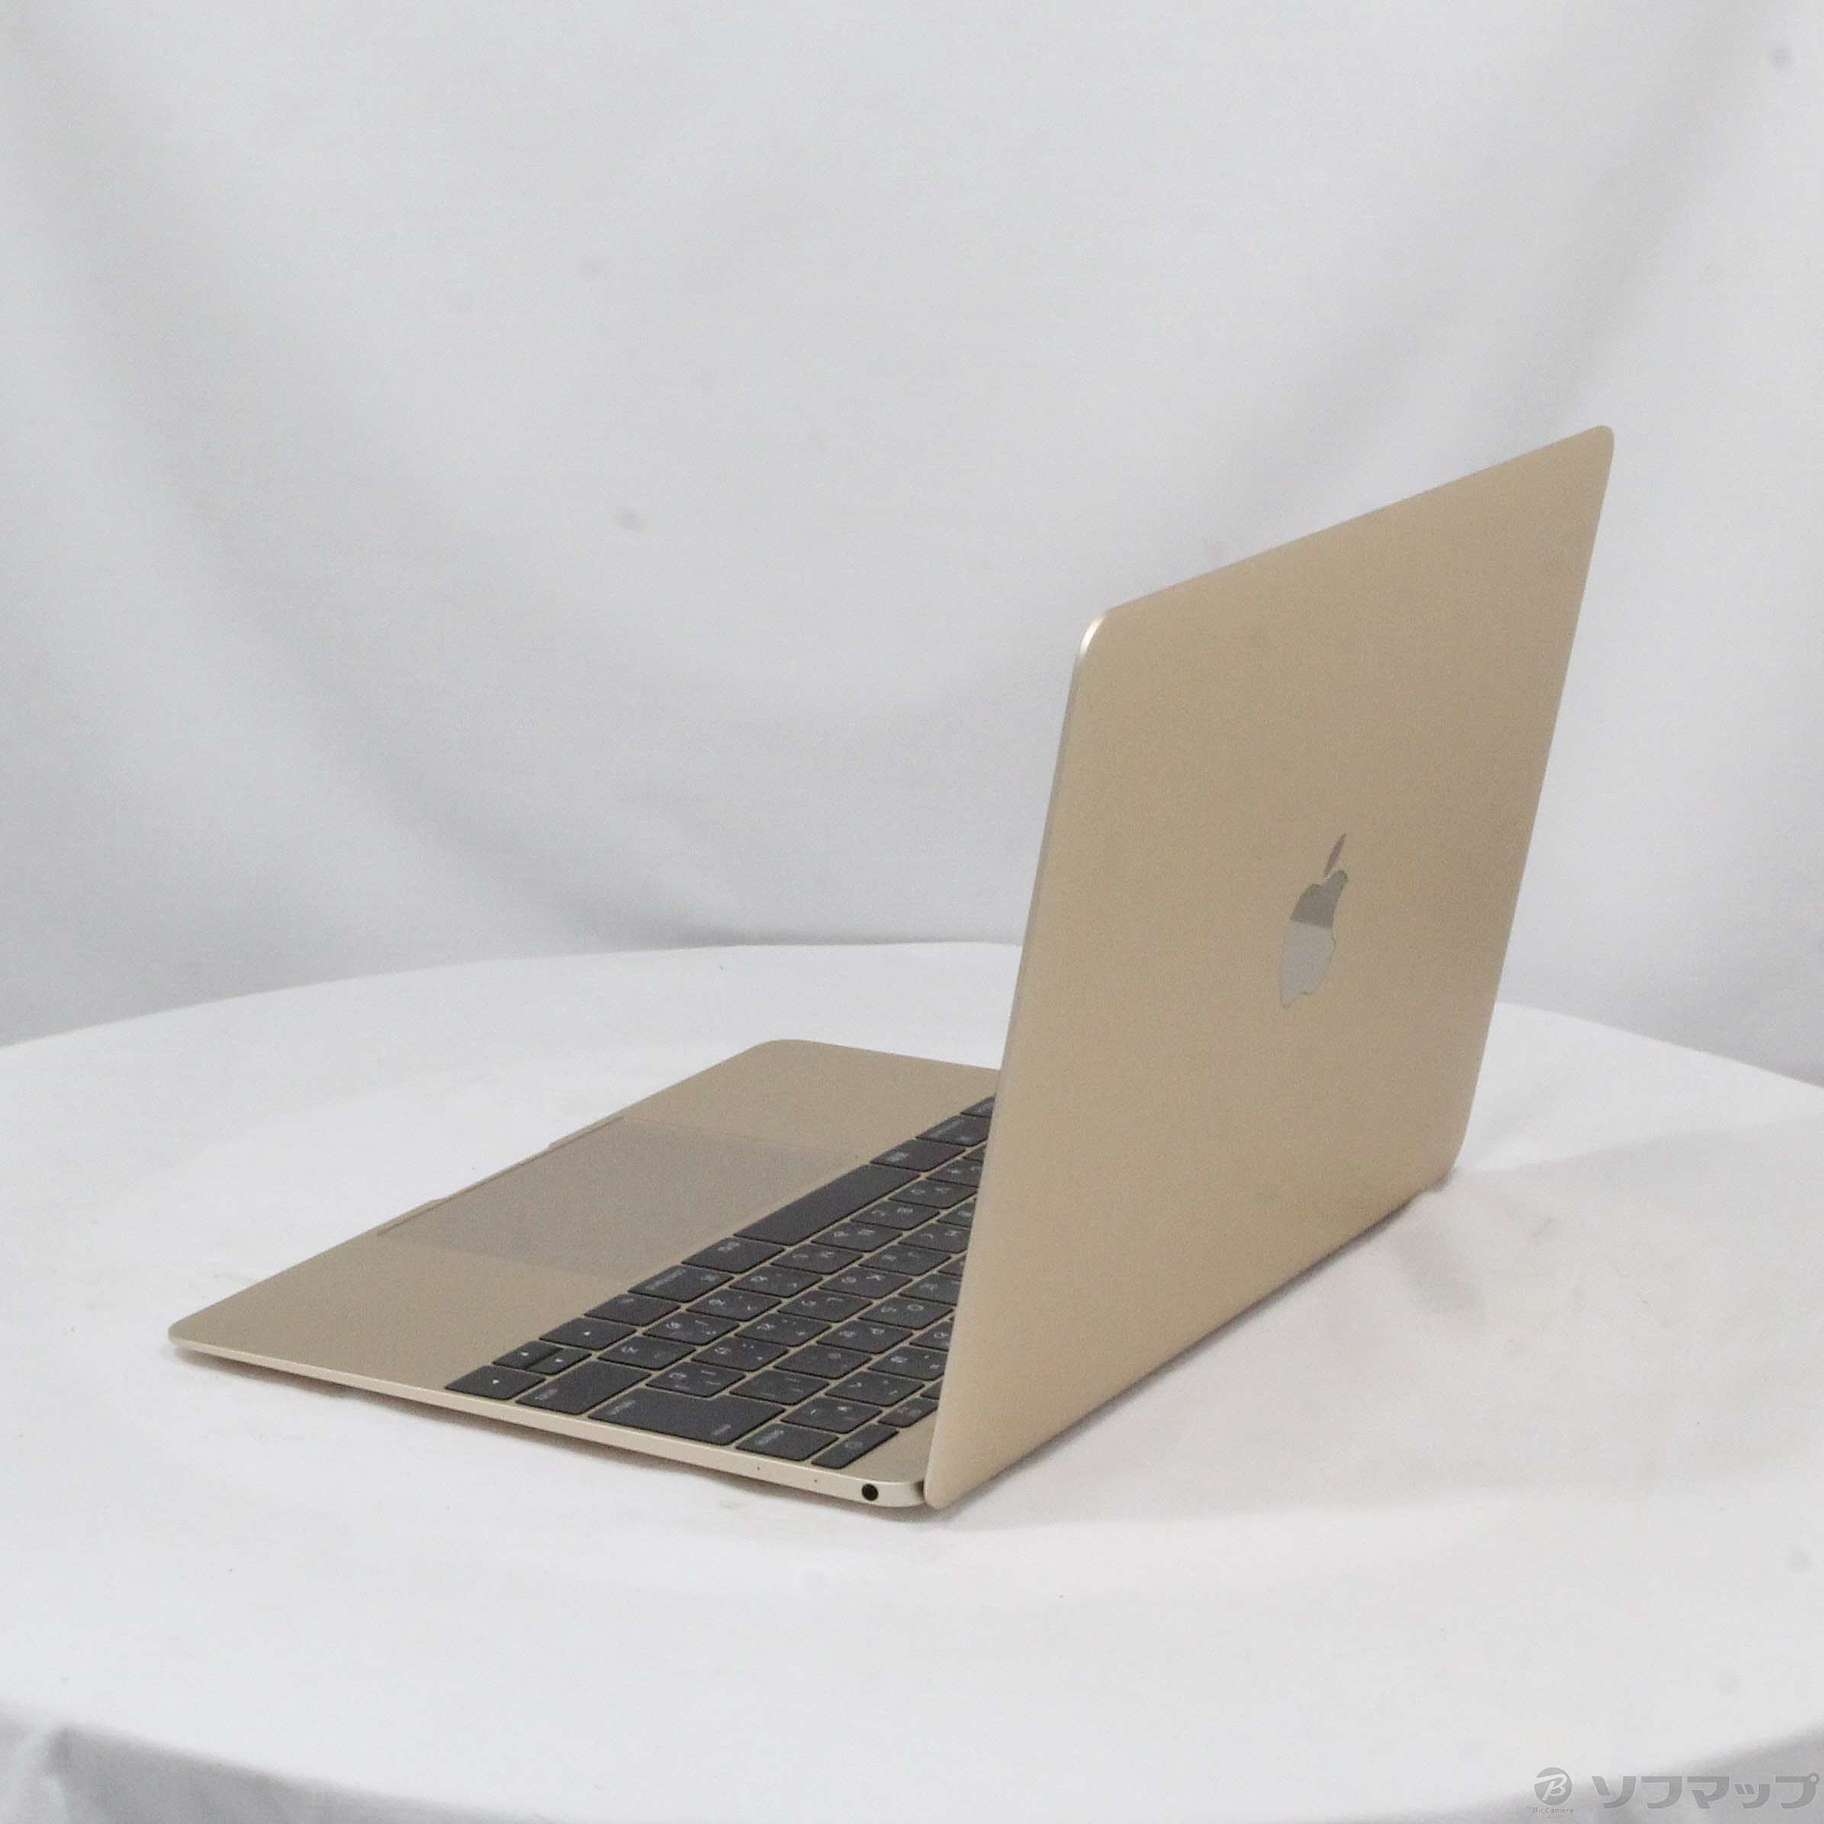 中古品MacBook 12-inch Early 2016 MLHE2J/A Core_m3 1.1GHz 8GB